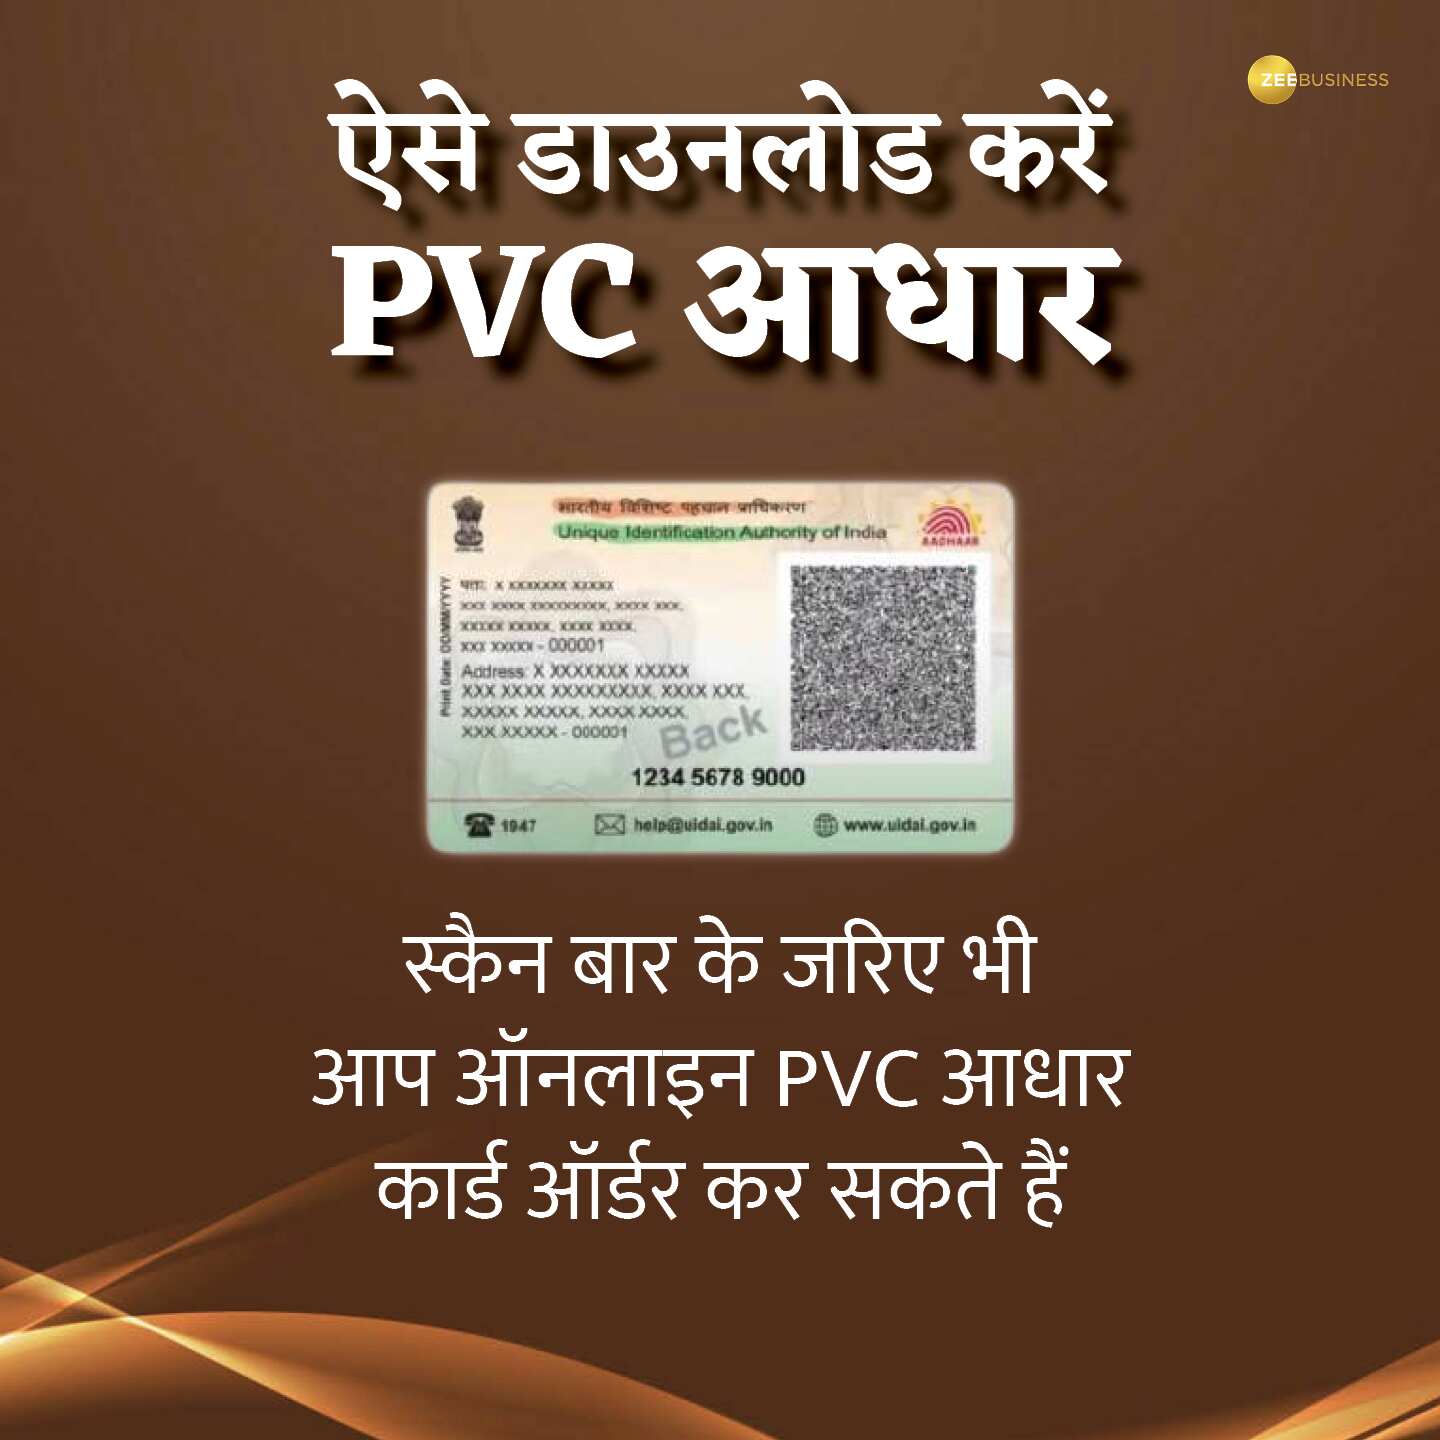 कैसे डाउनलोड करें PVC आधार कार्ड